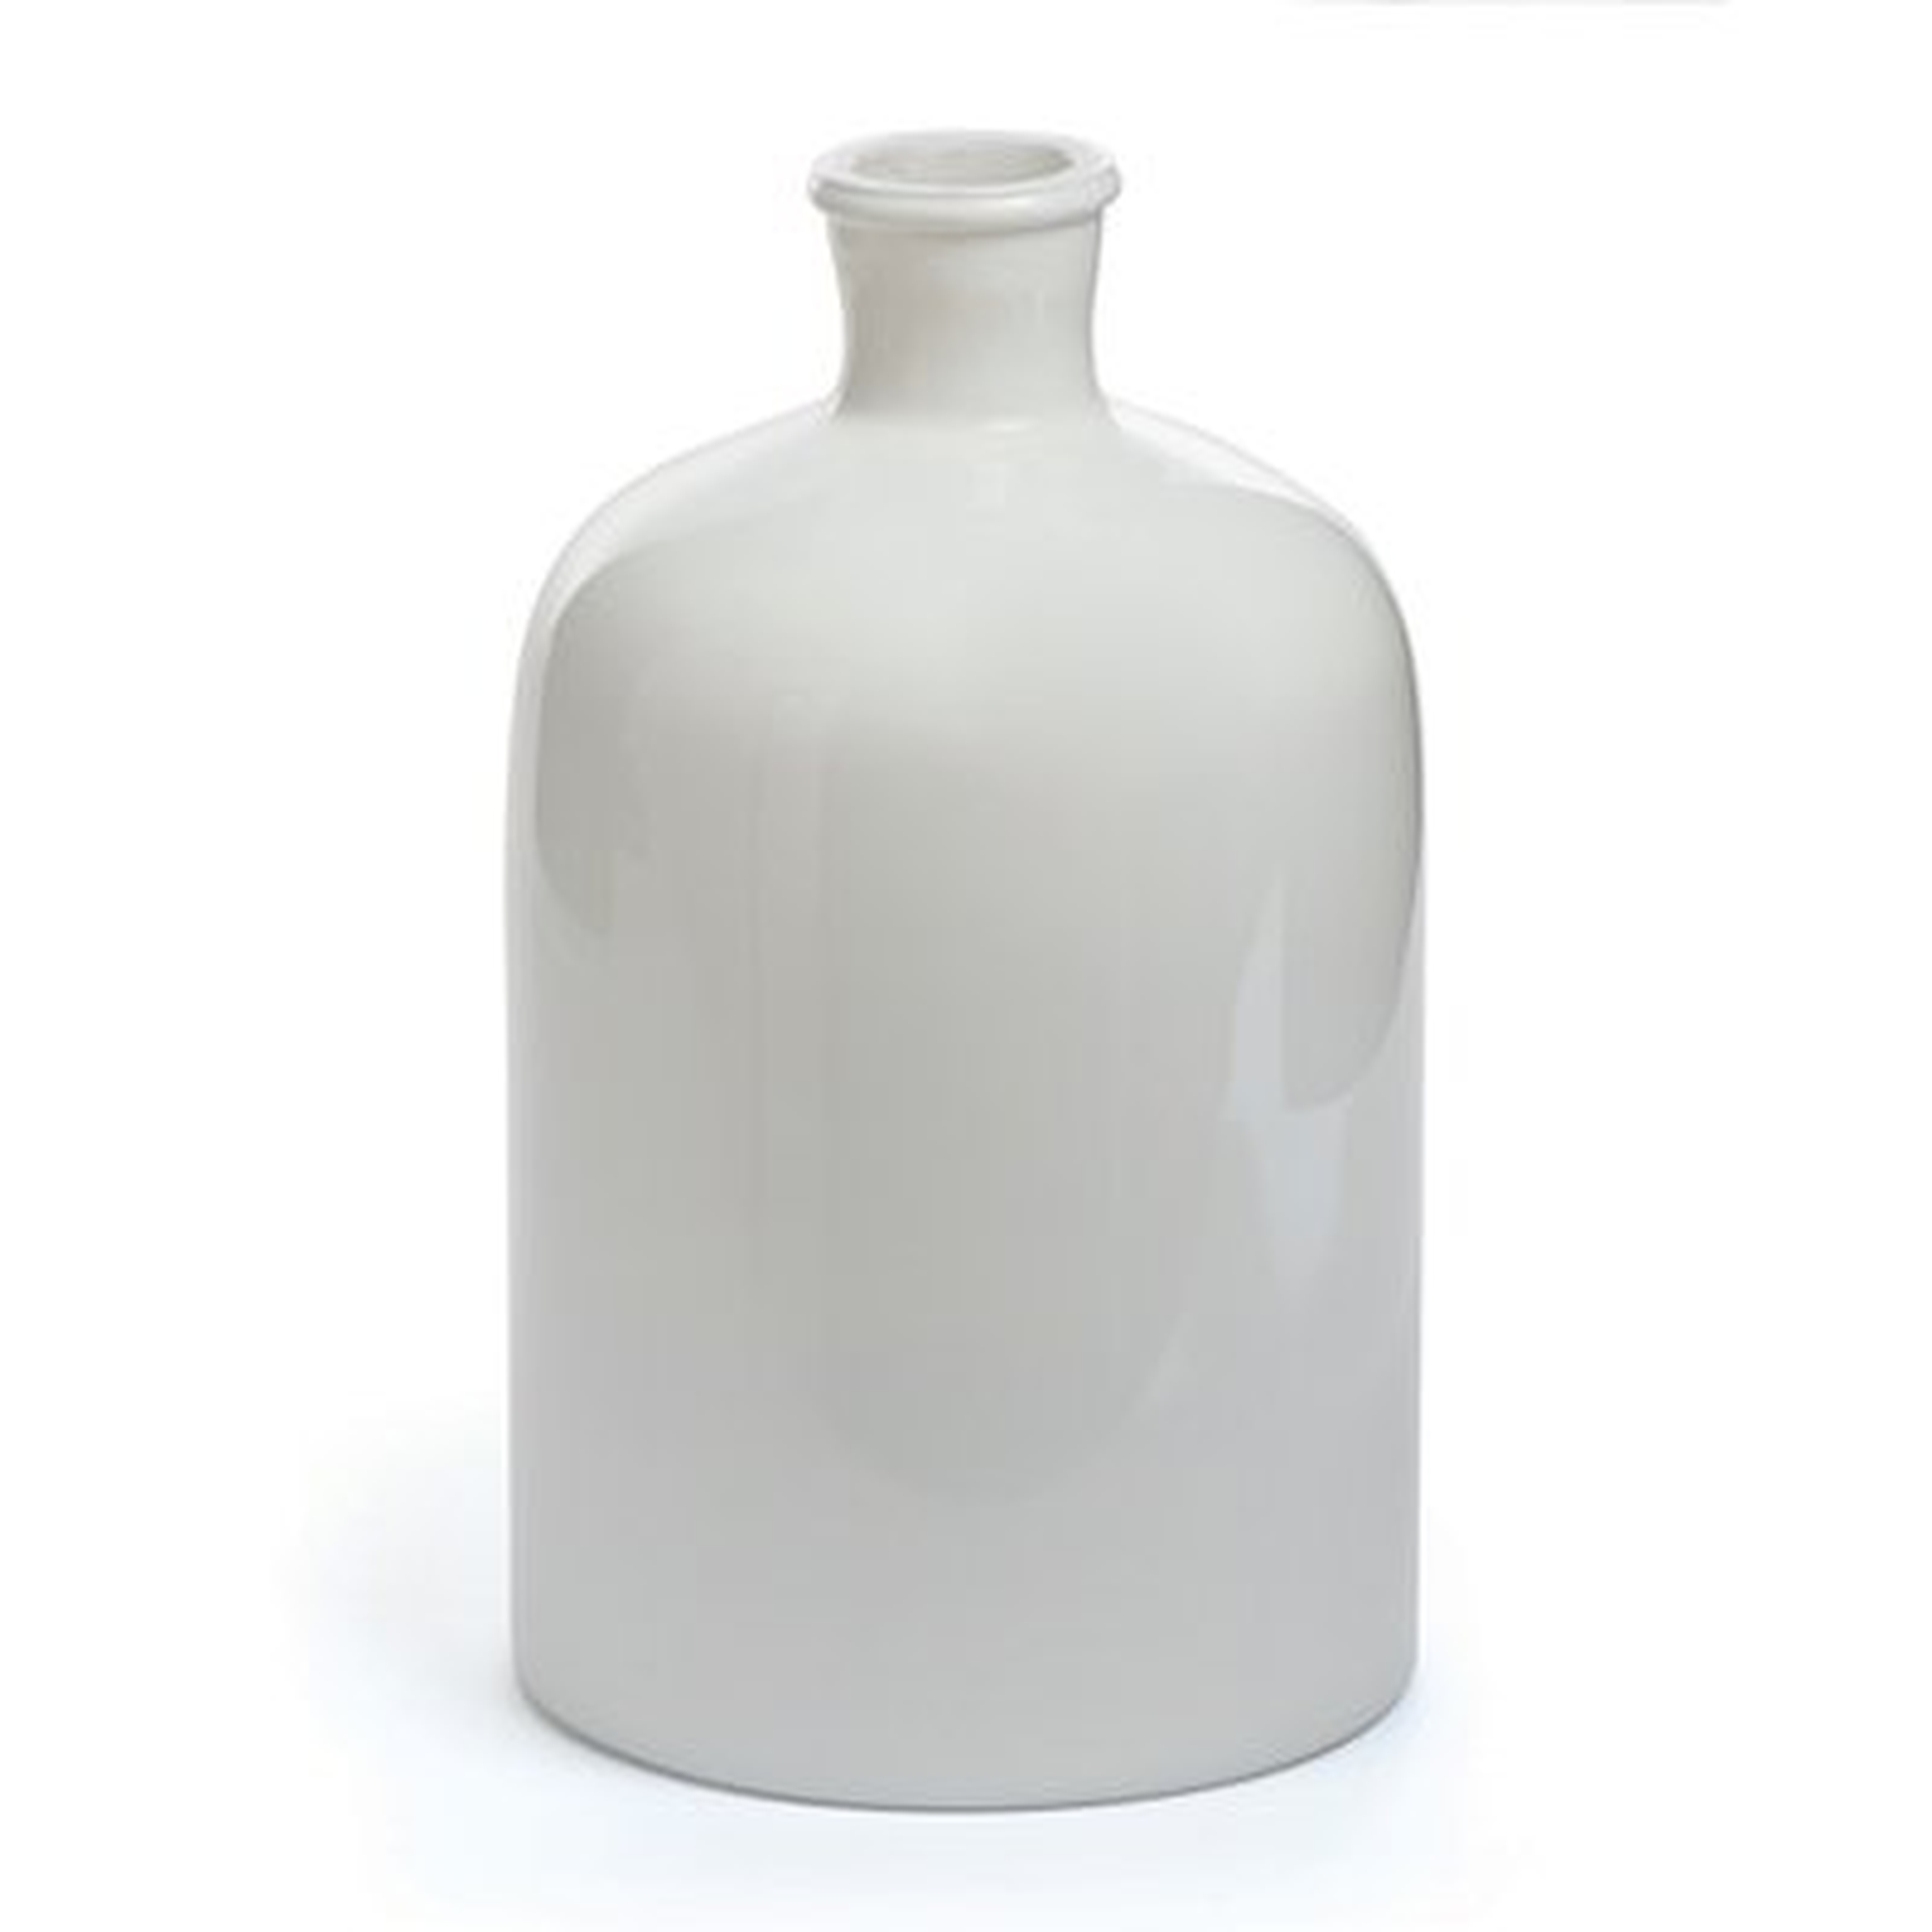 White Glass Vase - Wayfair